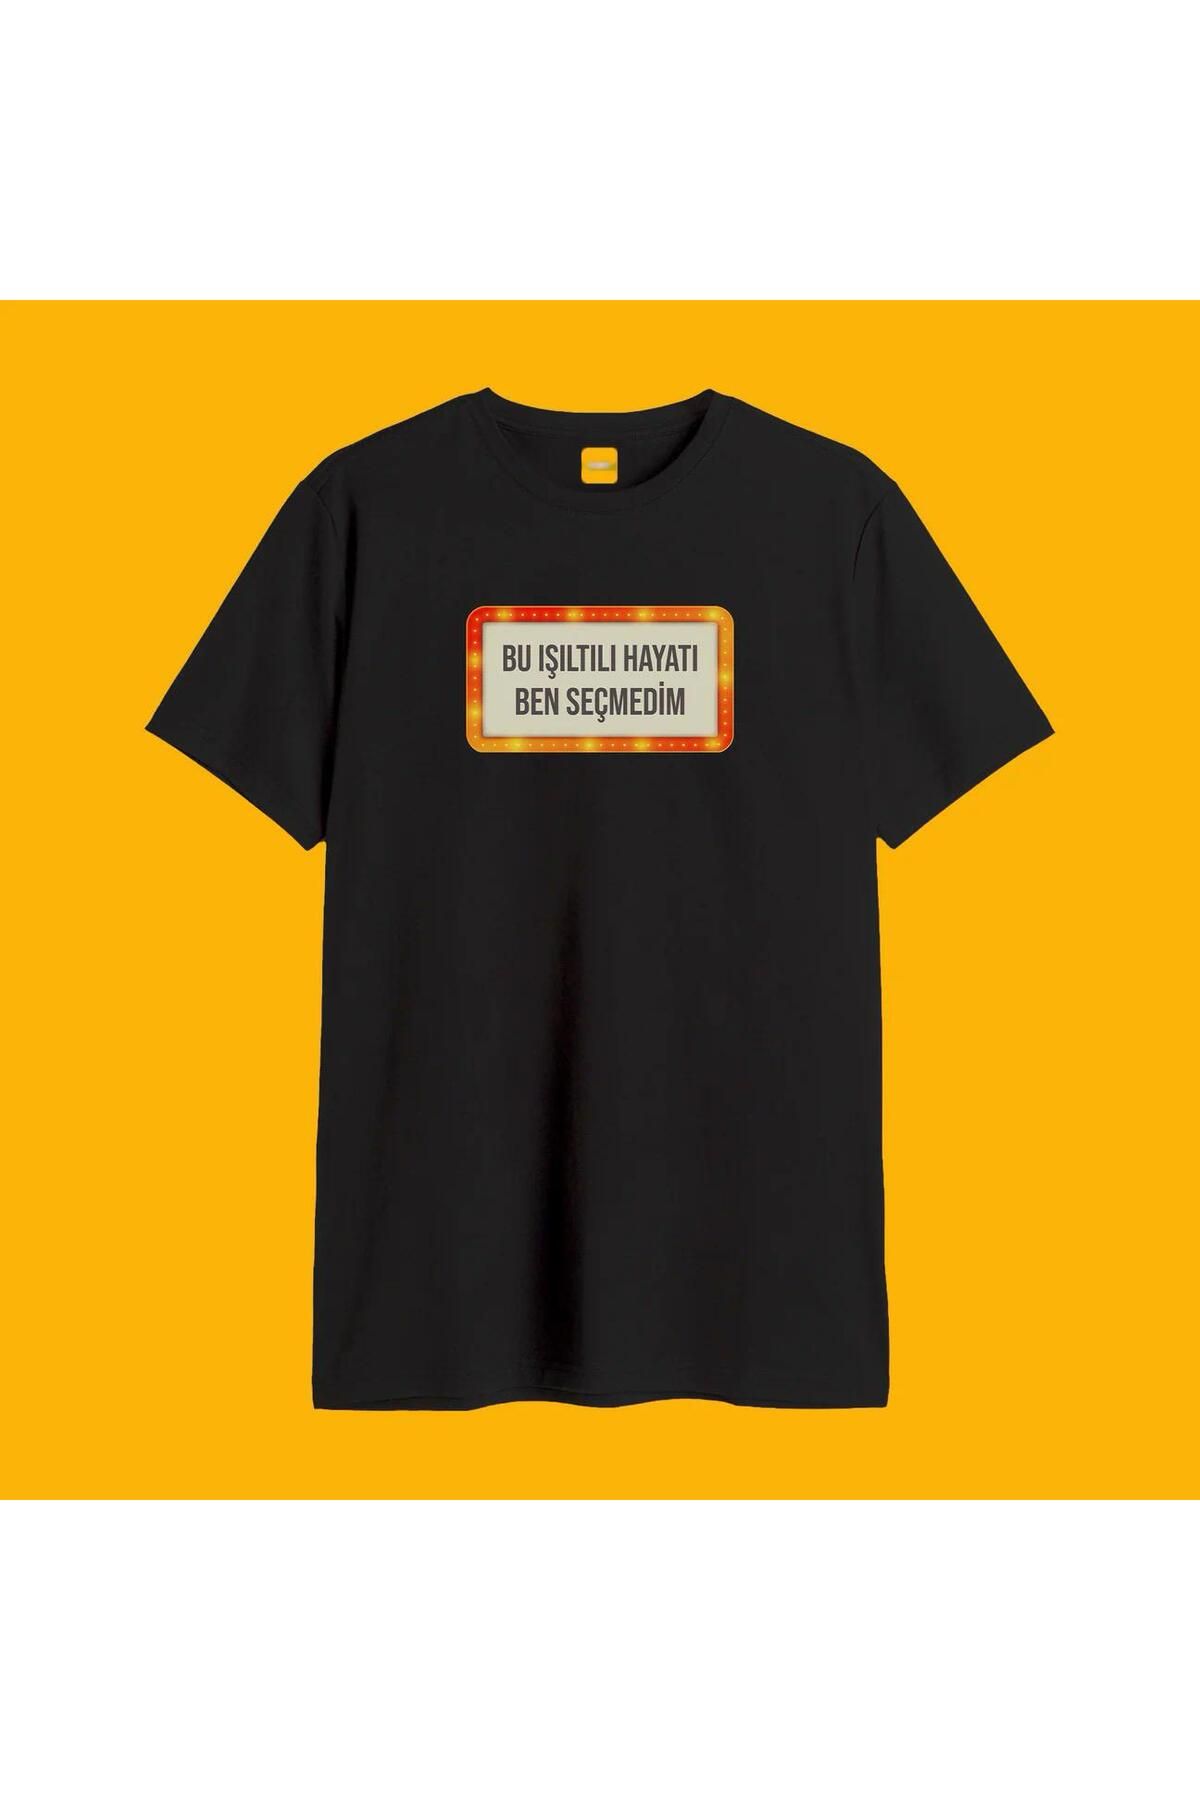 Khione Unisex Tasarım Bu Işıltılı Hayatı Ben Seçmedim Baskılı Oversize %100 Pamuk T-shirt